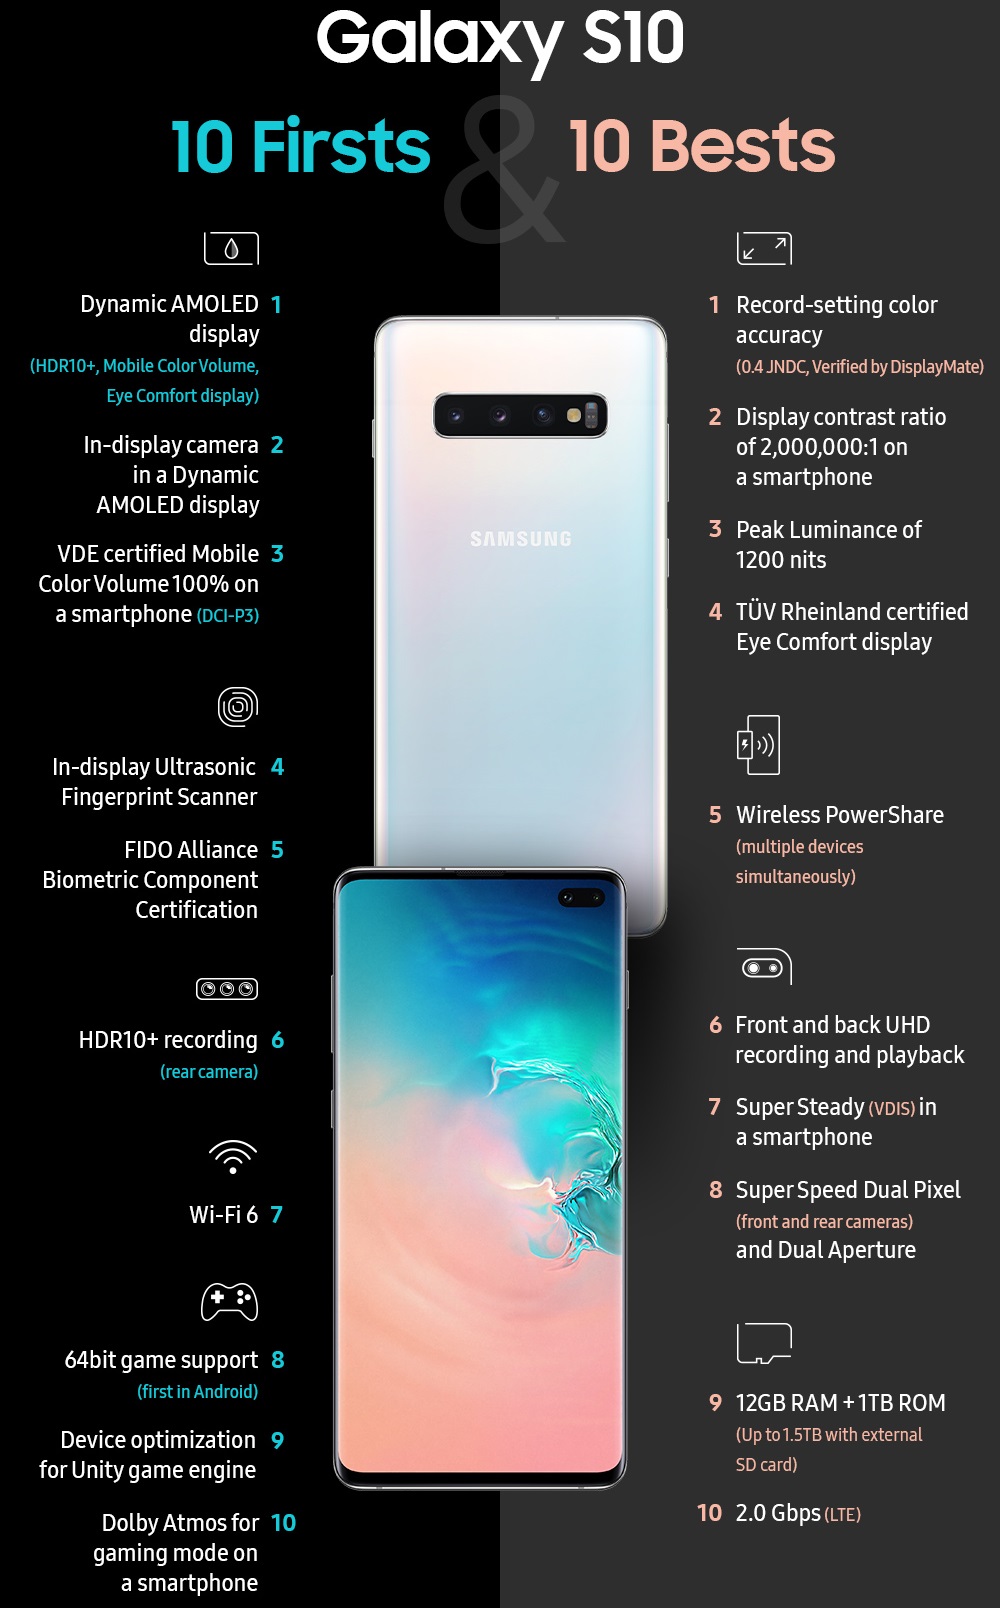 Samsung Galaxy S10, S10+ and S10e Review: Predictably impressive